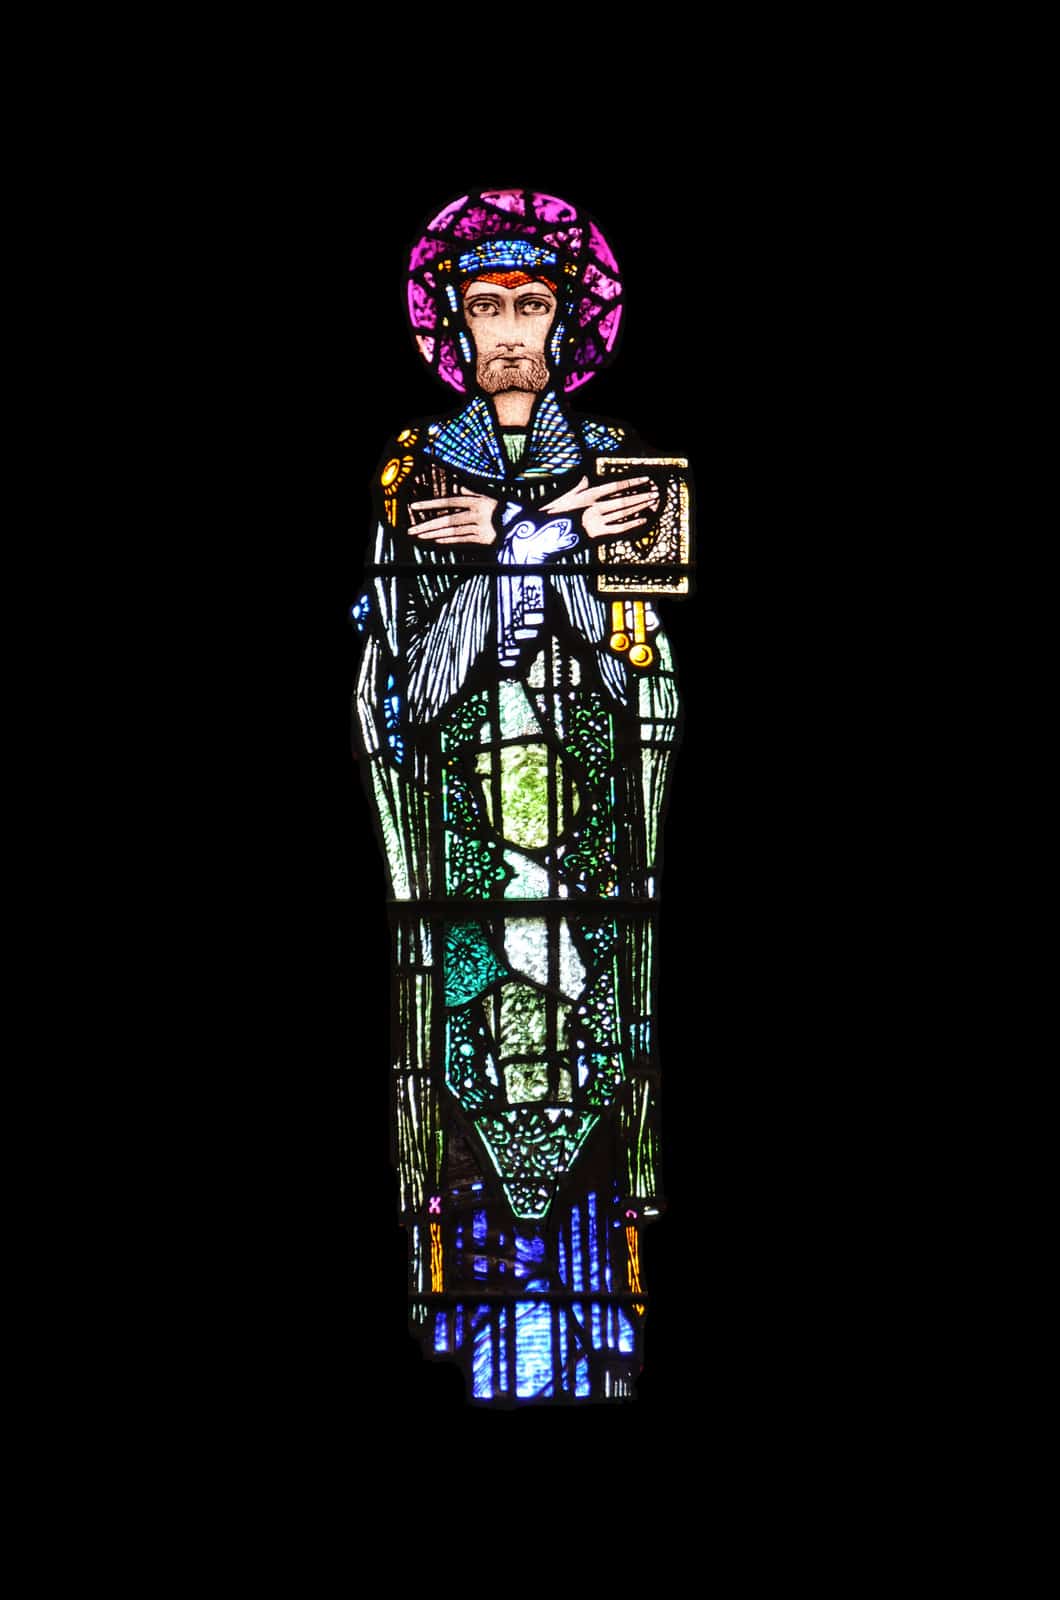 Saint Fechin by Fergal of Claddagh at Flickr